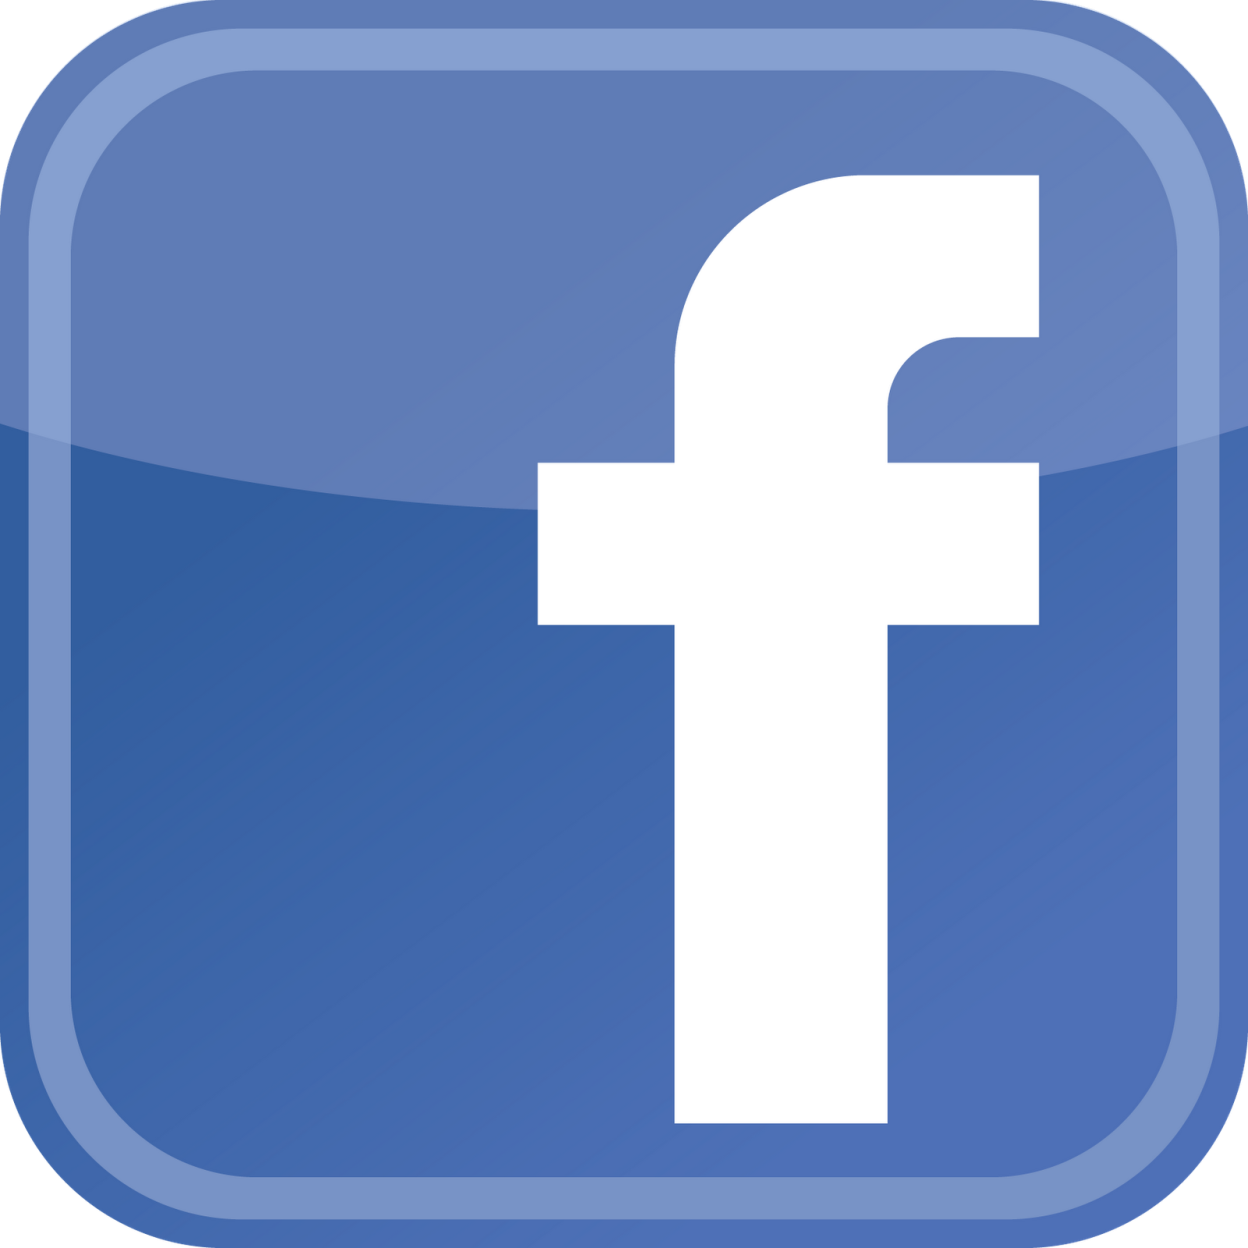 Facebook com dialog. Фейсбук. Facebook логотип. Значки соц сетей по отдельности. Рисунок соцсети Фейсбук.